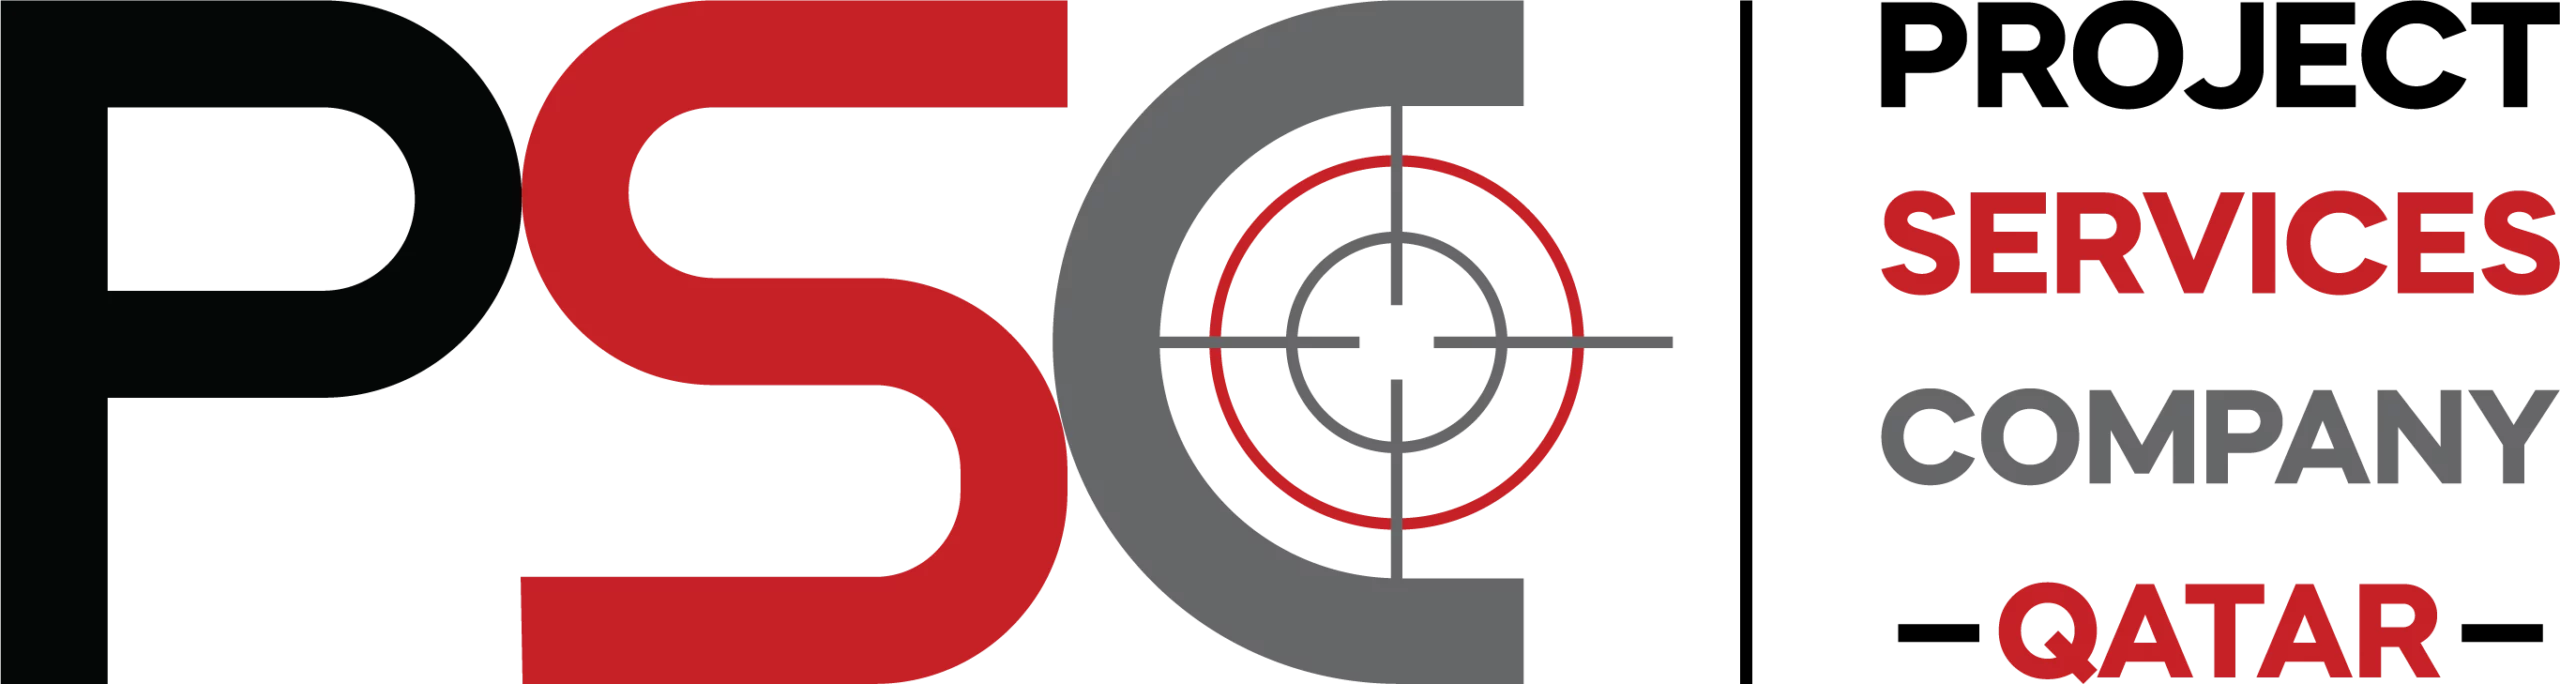 PSC-Qatar-Logo